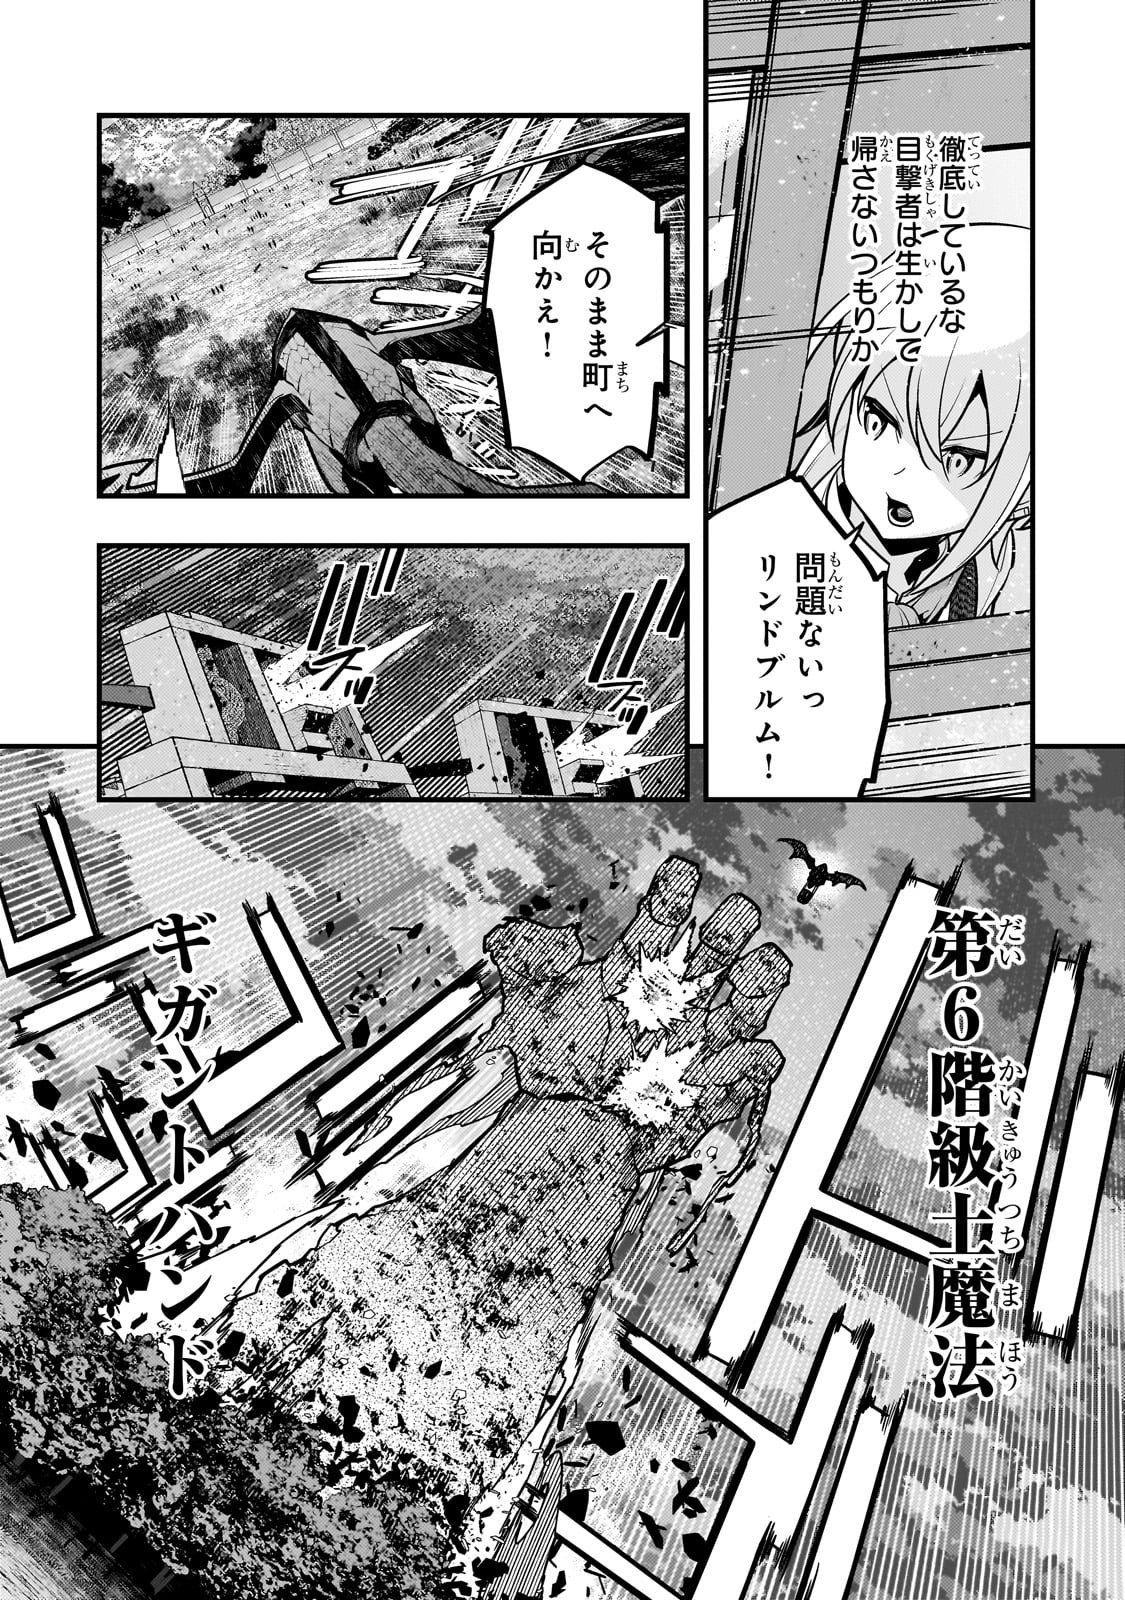 Kyoukai Meikyuu to Ikai no Majutsushi - Chapter 65 - Page 3